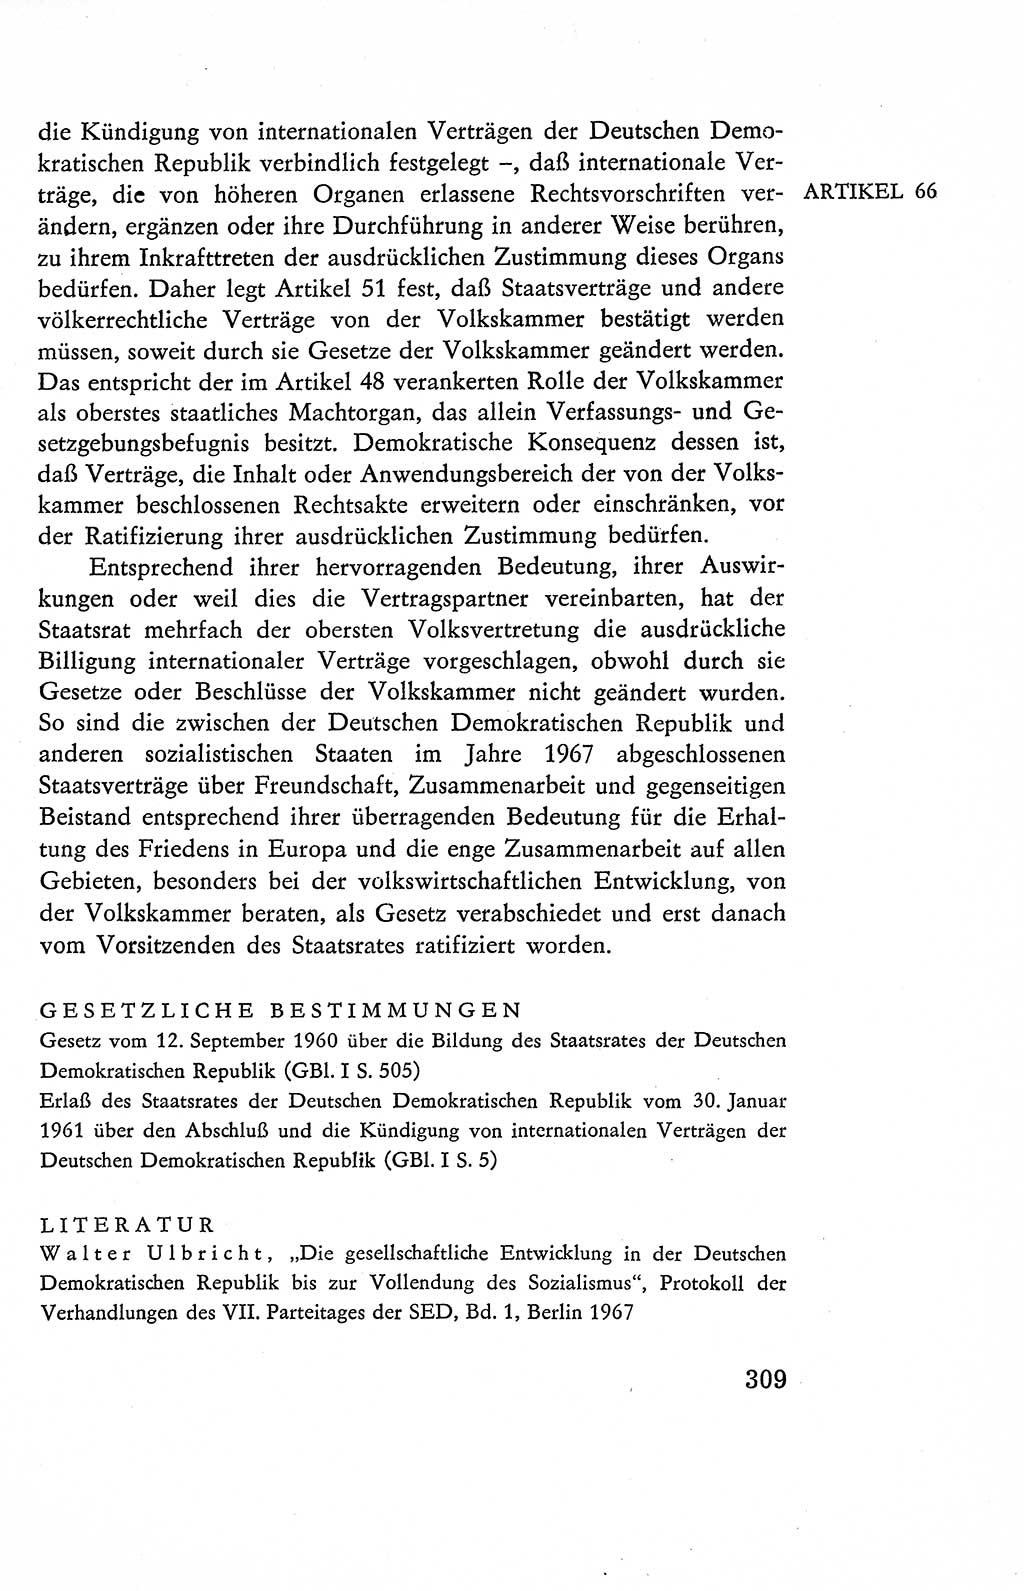 Verfassung der Deutschen Demokratischen Republik (DDR), Dokumente, Kommentar 1969, Band 2, Seite 309 (Verf. DDR Dok. Komm. 1969, Bd. 2, S. 309)